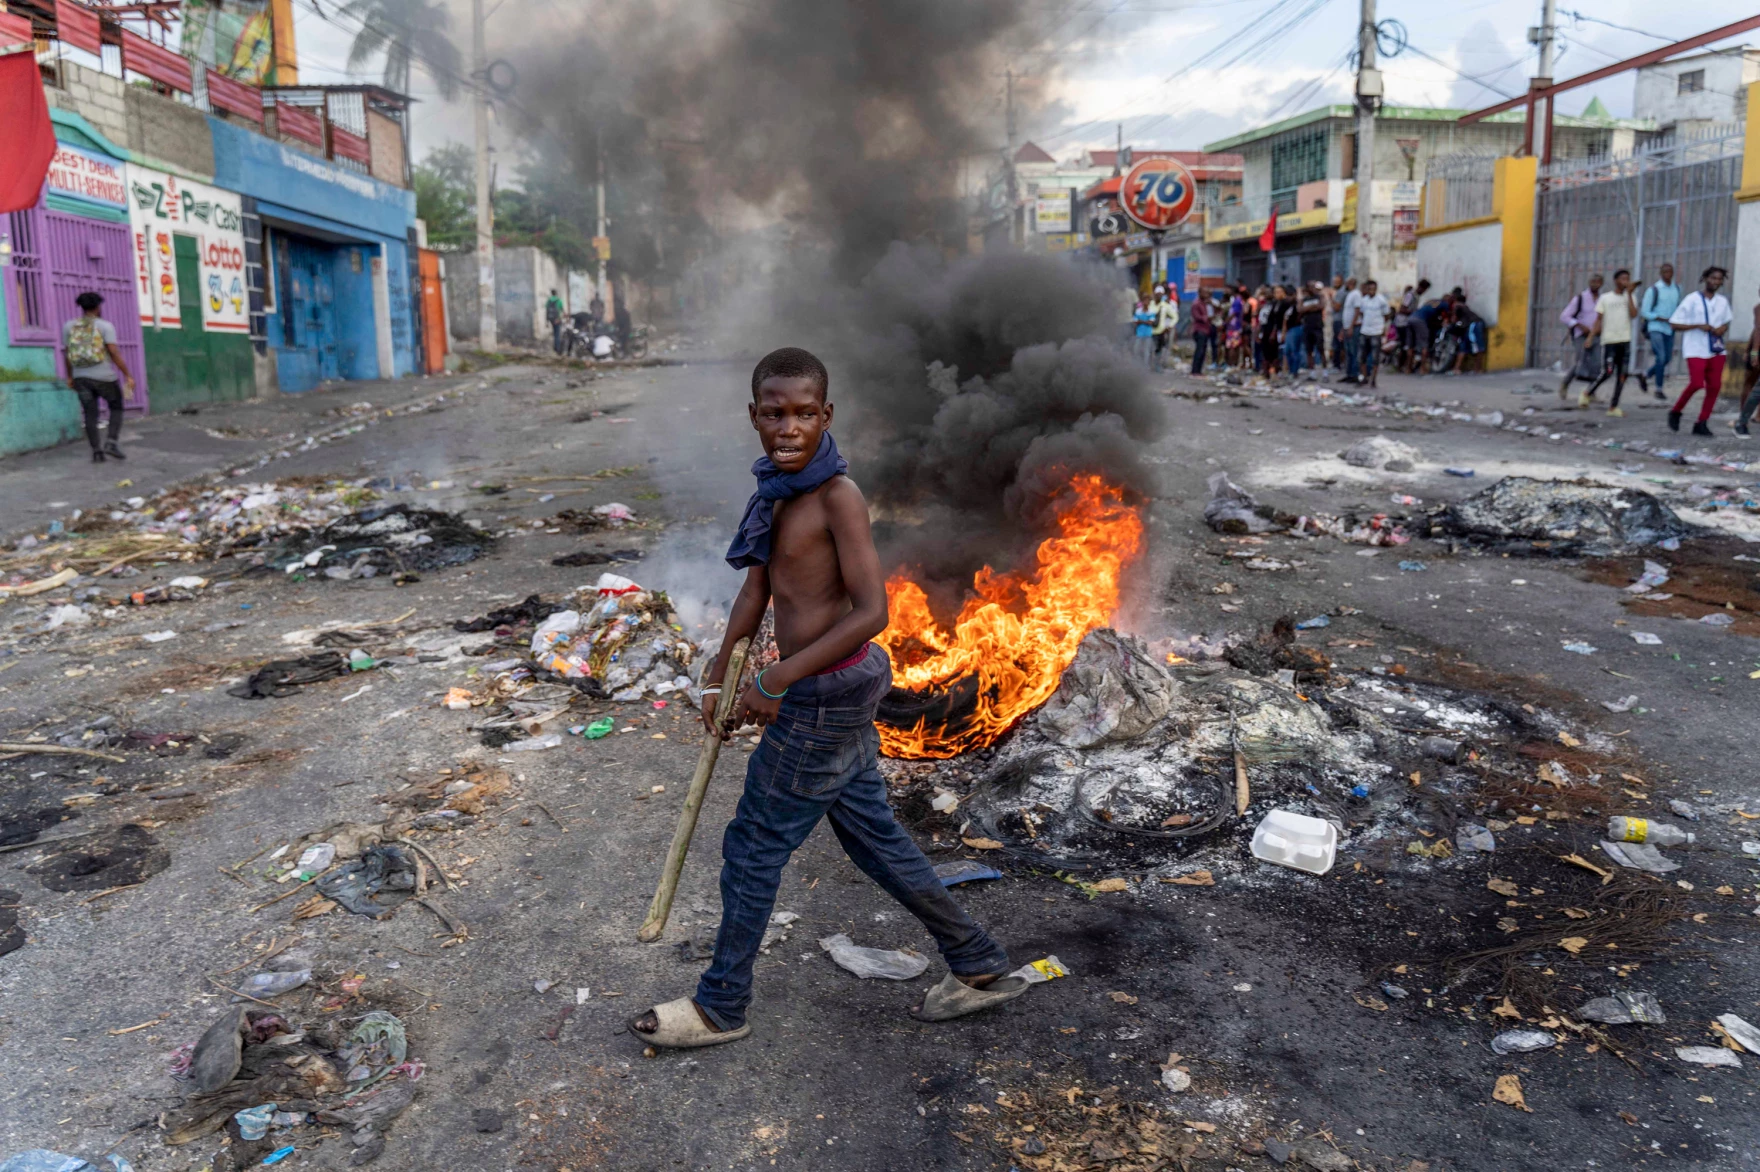 Αϊτή: Δημιουργήθηκαν οι μεταβατικές αρχές για την αποκατάσταση της τάξης -Τα αποθέματα τροφίμων θα εξαντληθούν εντός του μήνα